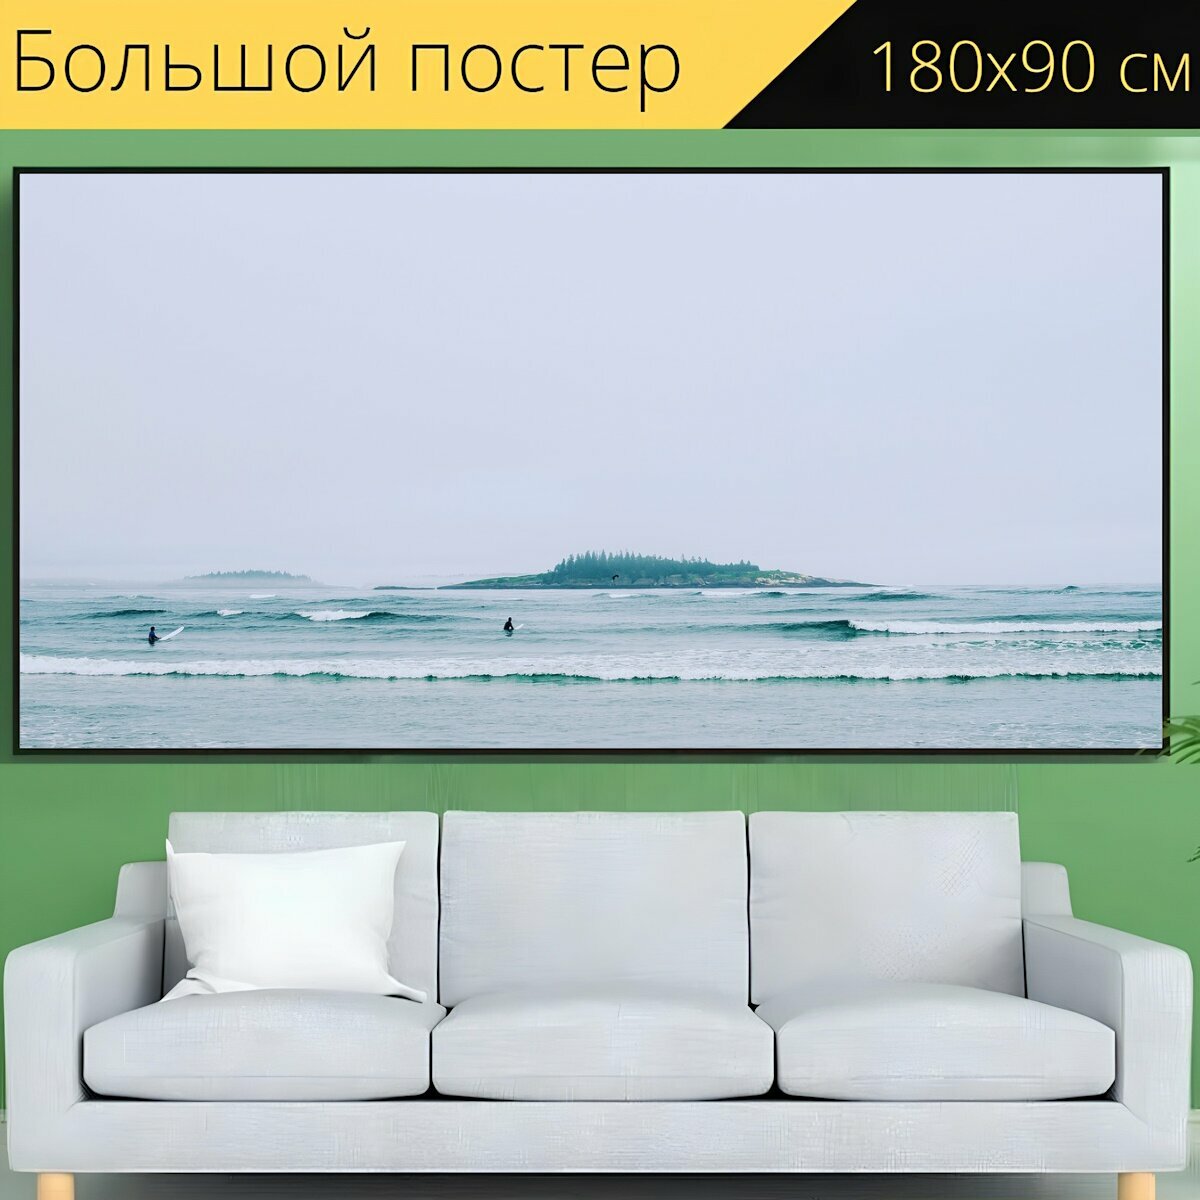 Большой постер "Пляж, морской берег, океан" 180 x 90 см. для интерьера